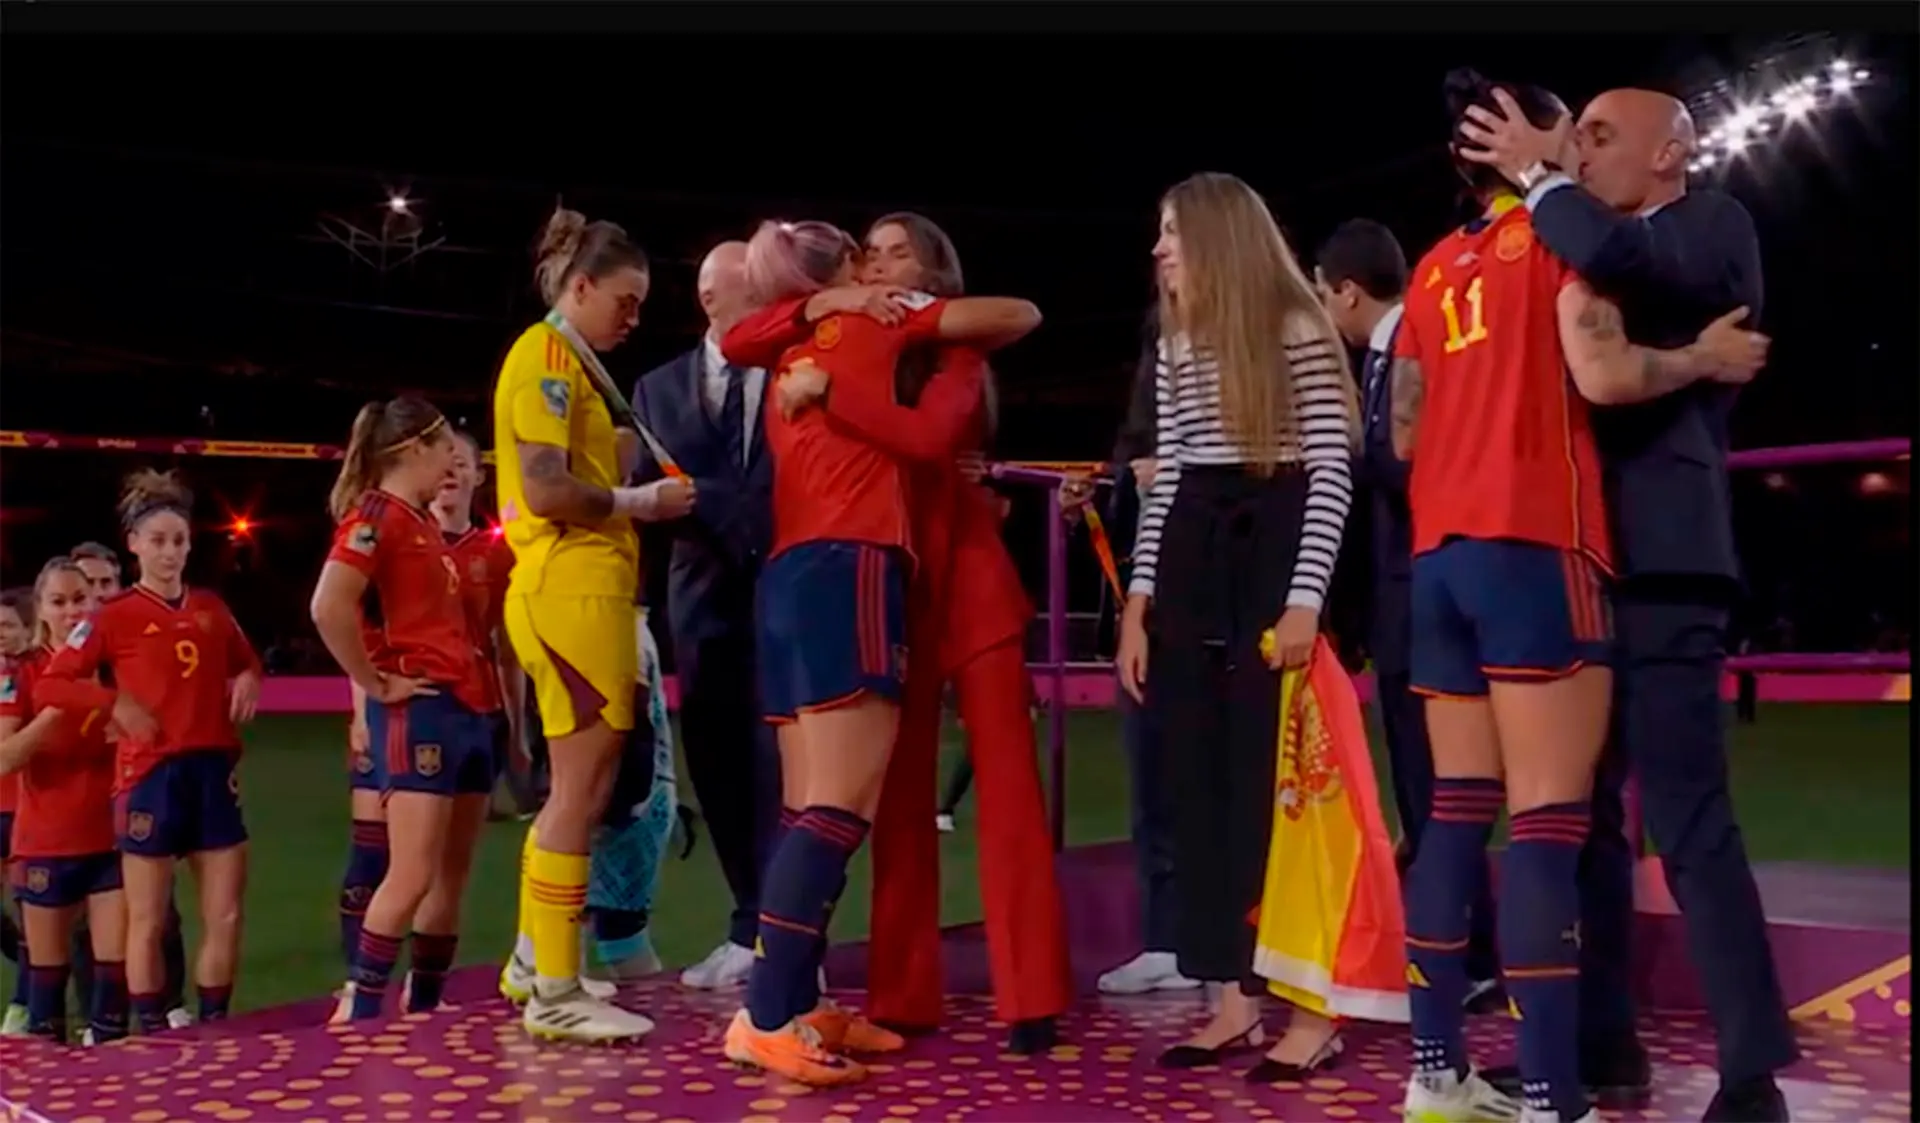 Durante las felicitaciones, el presidente de la Real Federación Española de Fútbol, Luis Manuel Rubiales, da un beso en la boca a la jugadora Jenny Hermoso / Imagen: RTVE - The Conversation